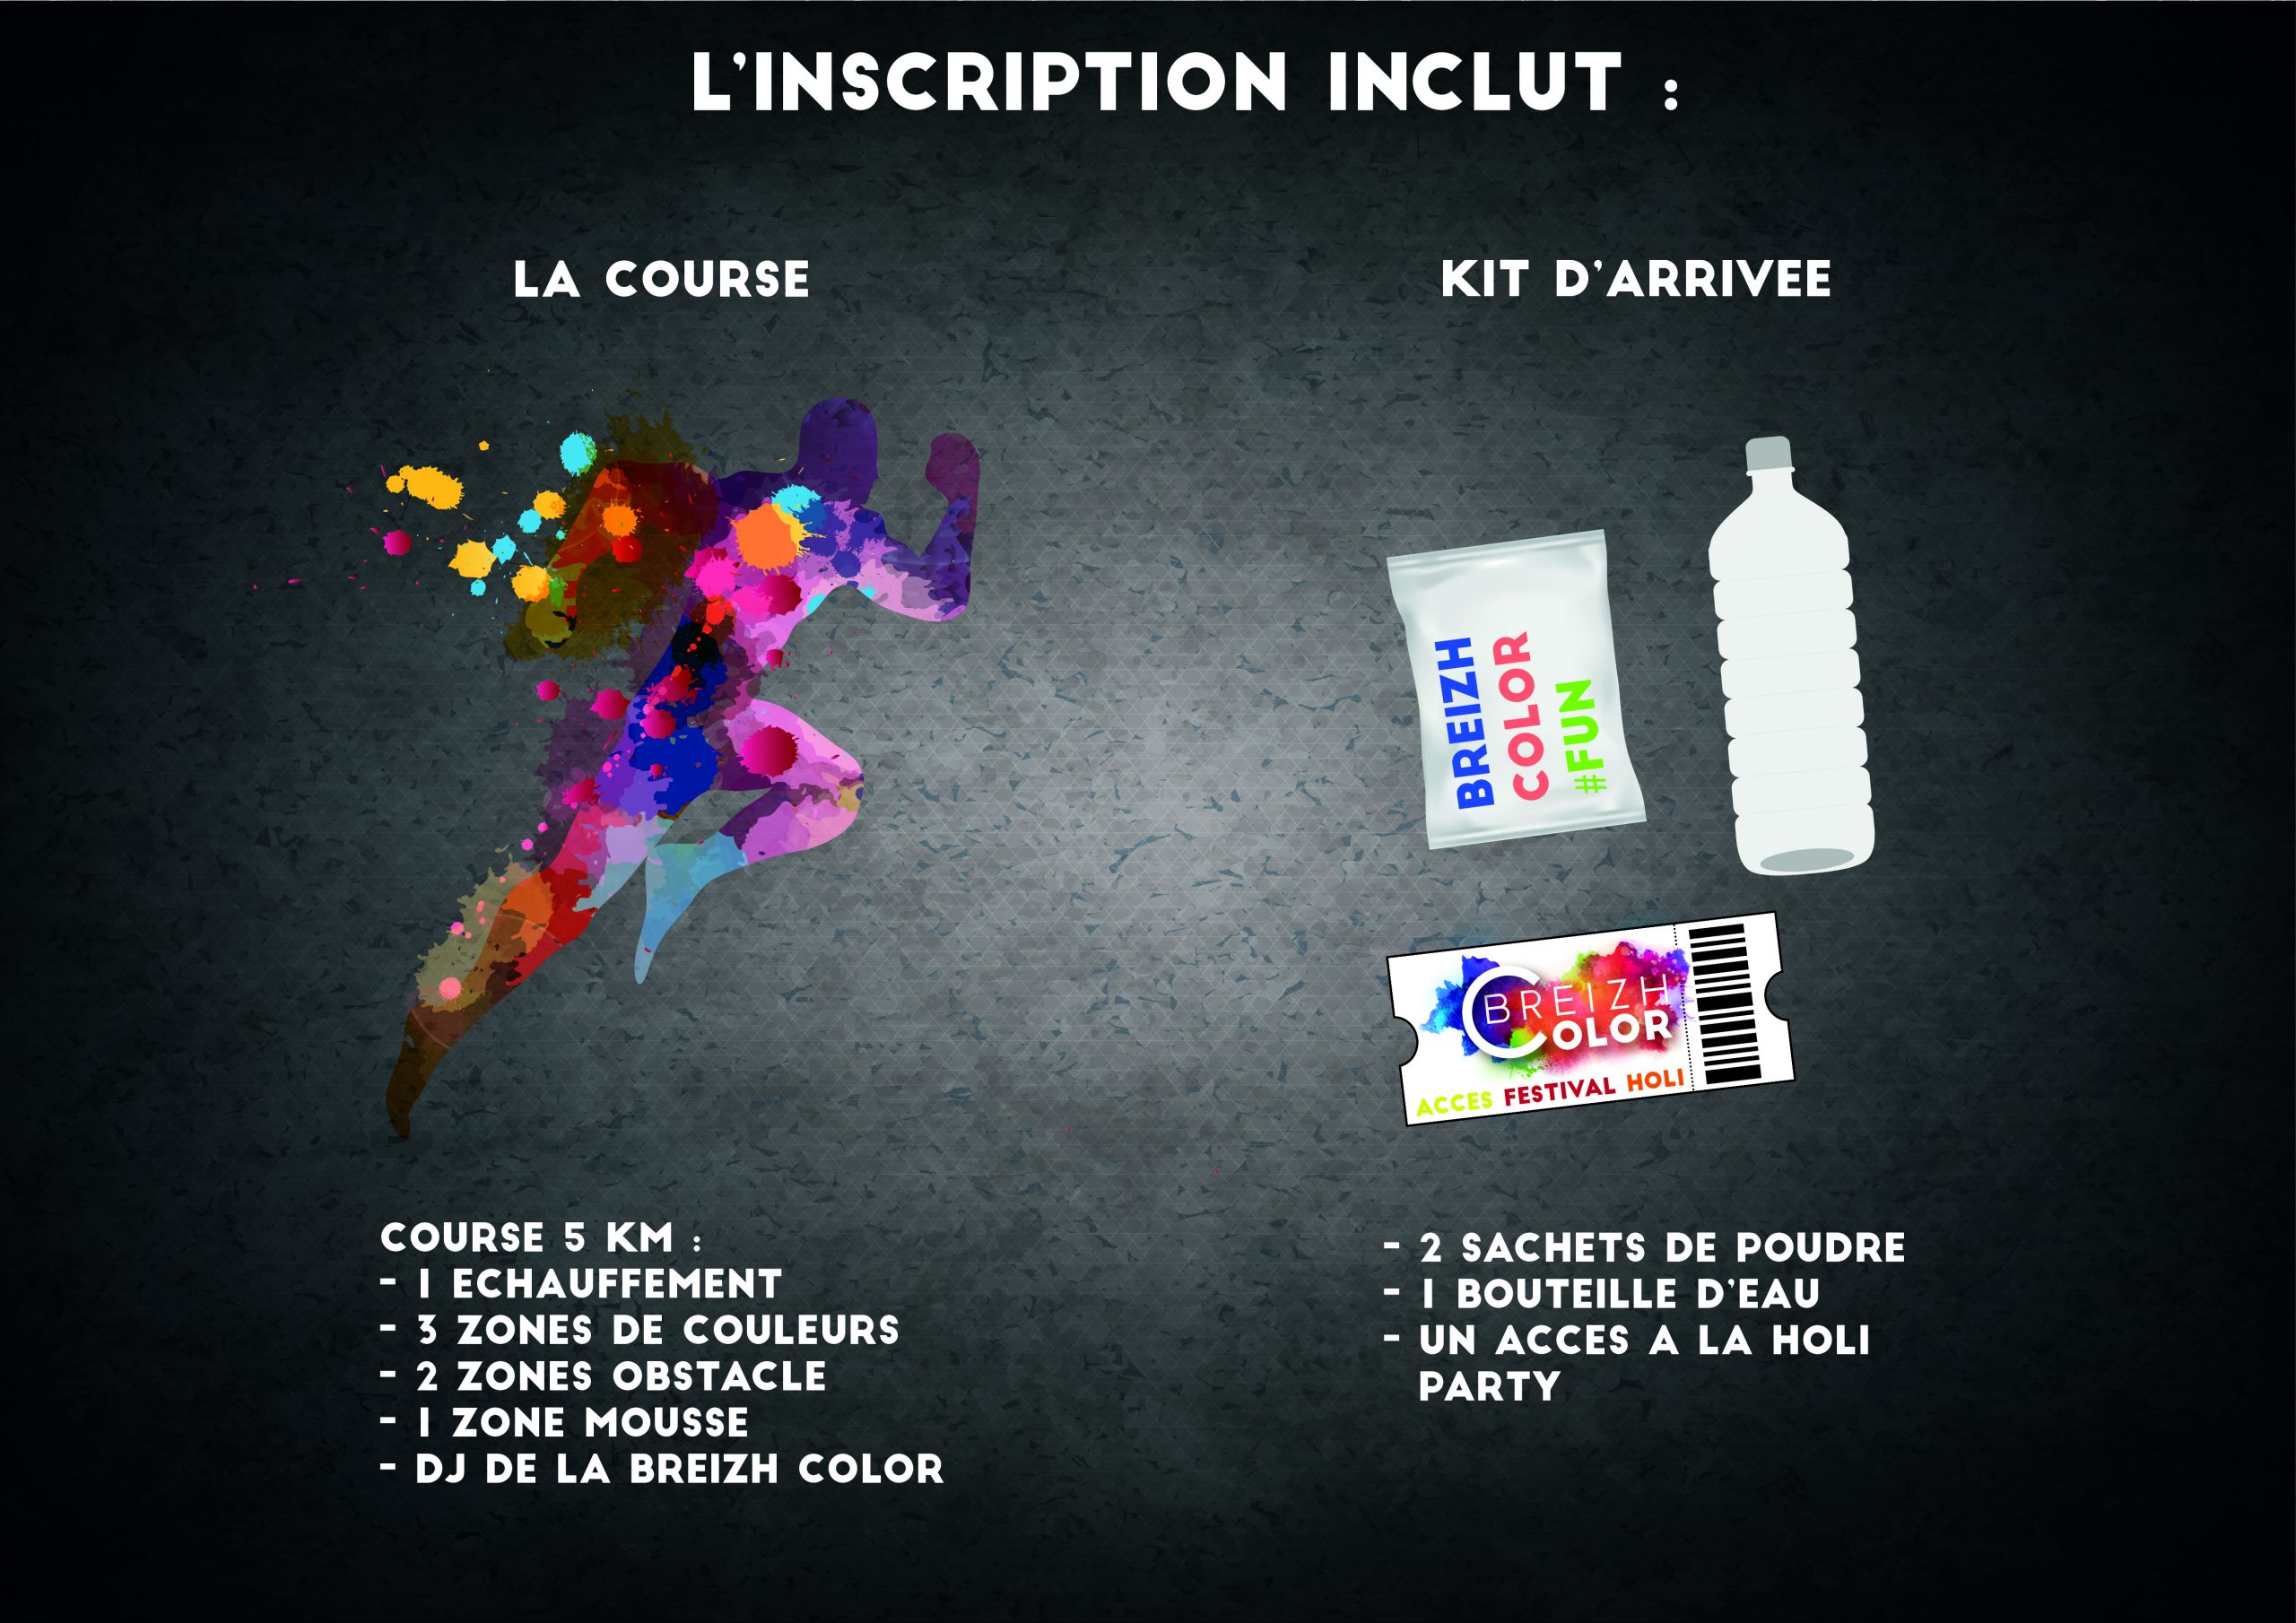 L'inscription à la Breizh Color comprend le kit (t-shirt, lunettes de soleil, sac à dos, magazine, sachet de poudre) ainsi que l'accès au festival Holi.